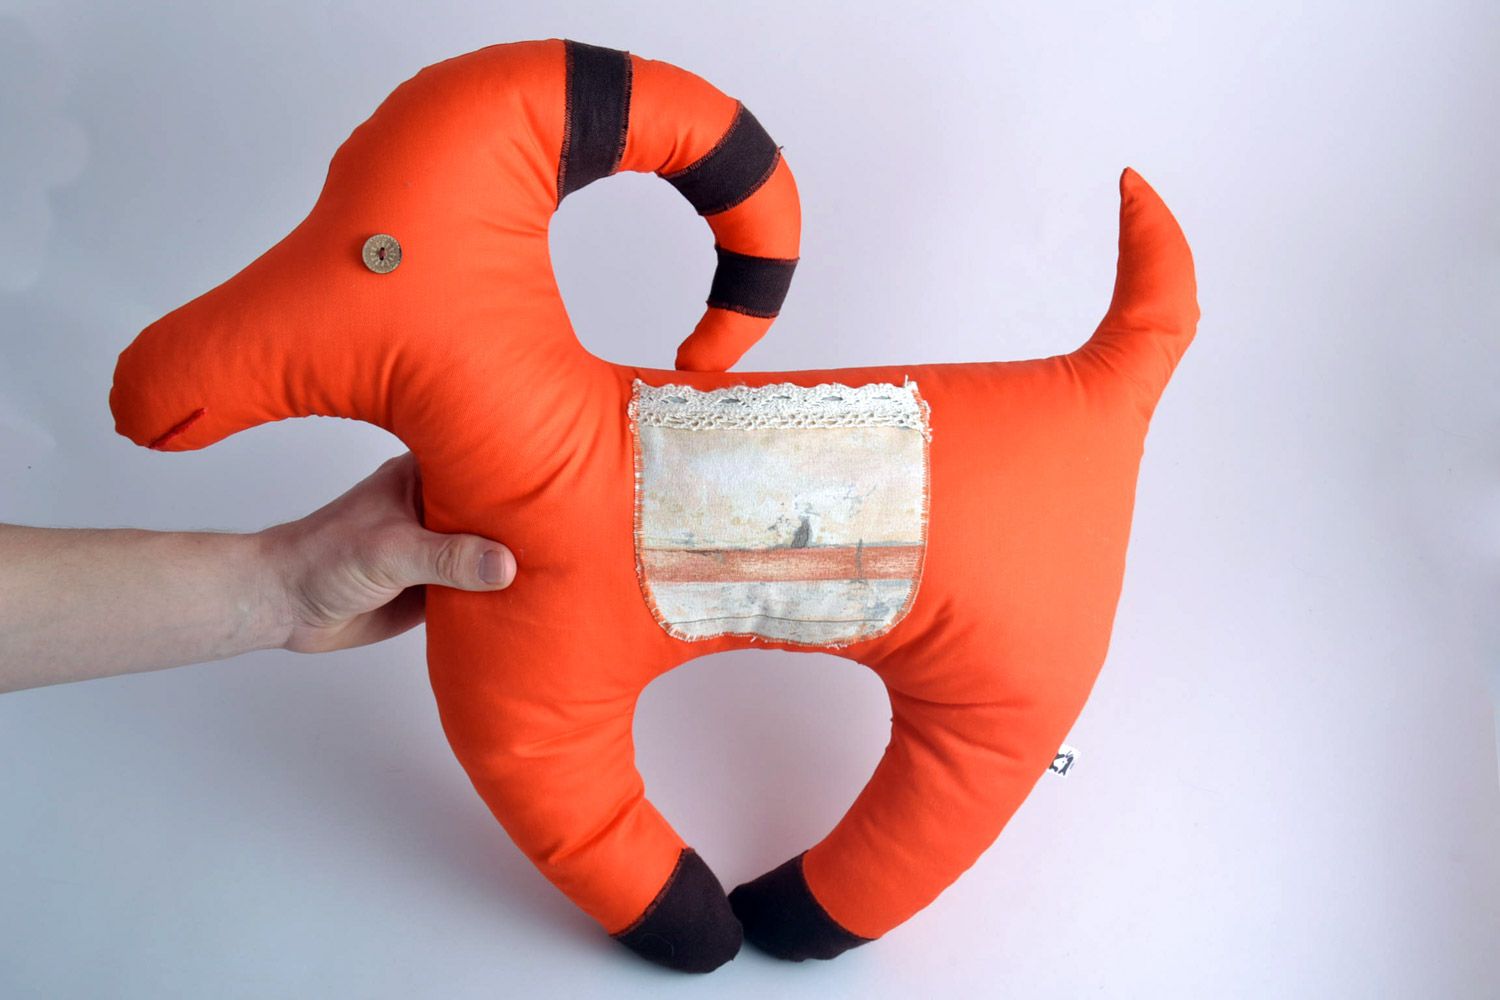 Almohada blanda juguete artesanal para niño anaranjada con forma de cabrita foto 5